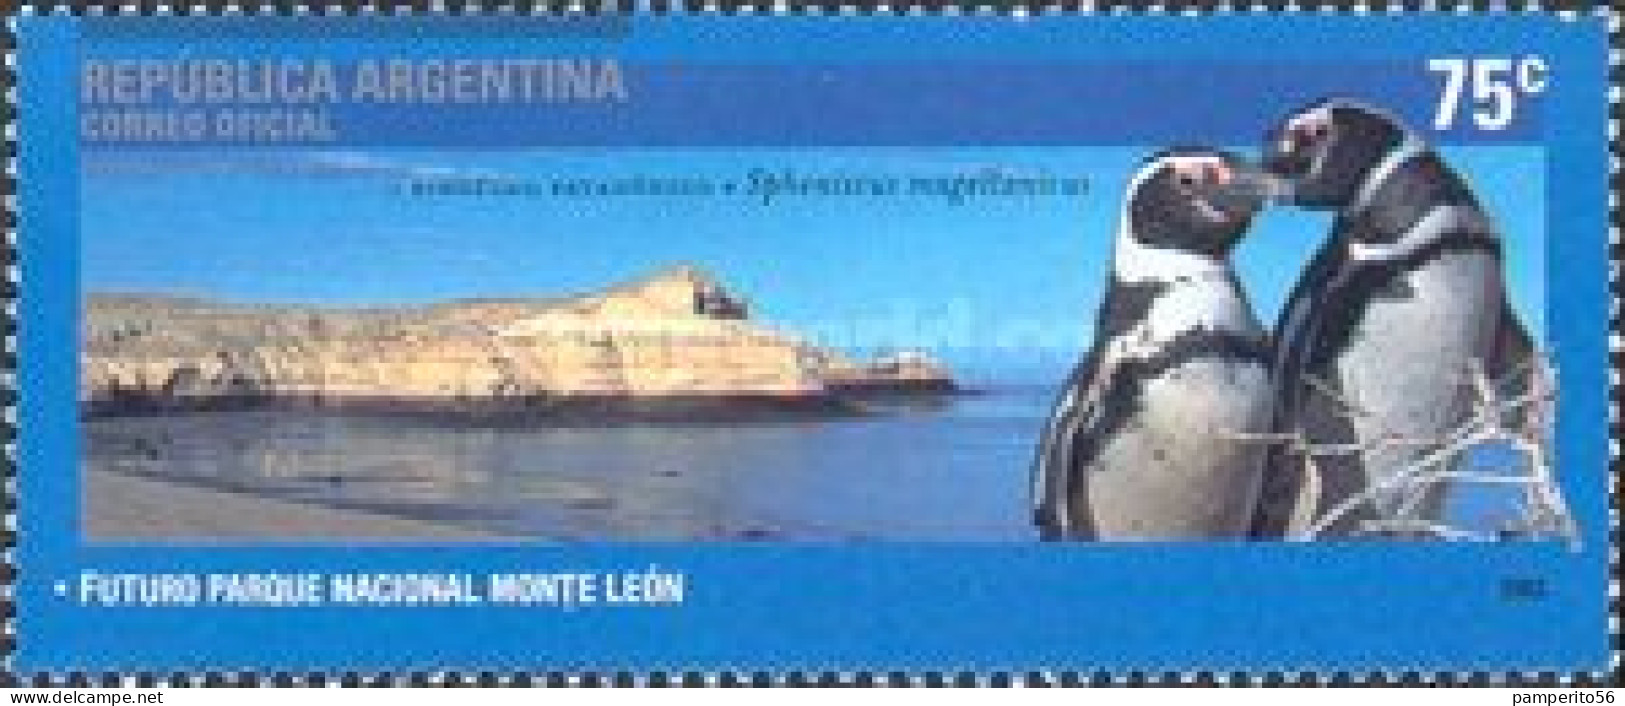 ARGENTINA - AÑO 2003 - Parques Nacionales, Parque Nacional Monte León, Pinguino Patagónico - Usada - Used Stamps